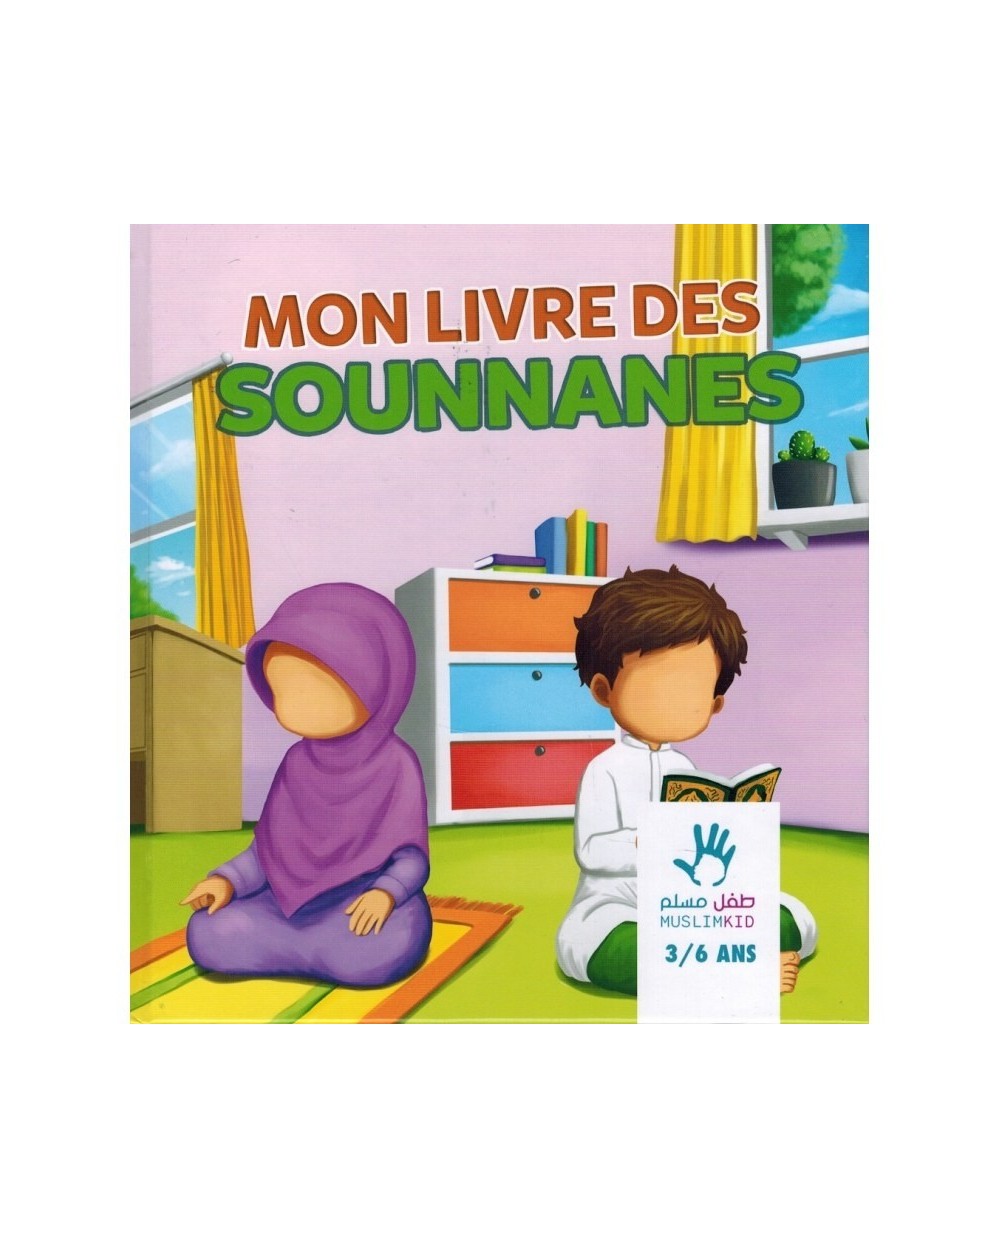 Mon livre des Sounnanes - Muslim kid - 3/6 ans